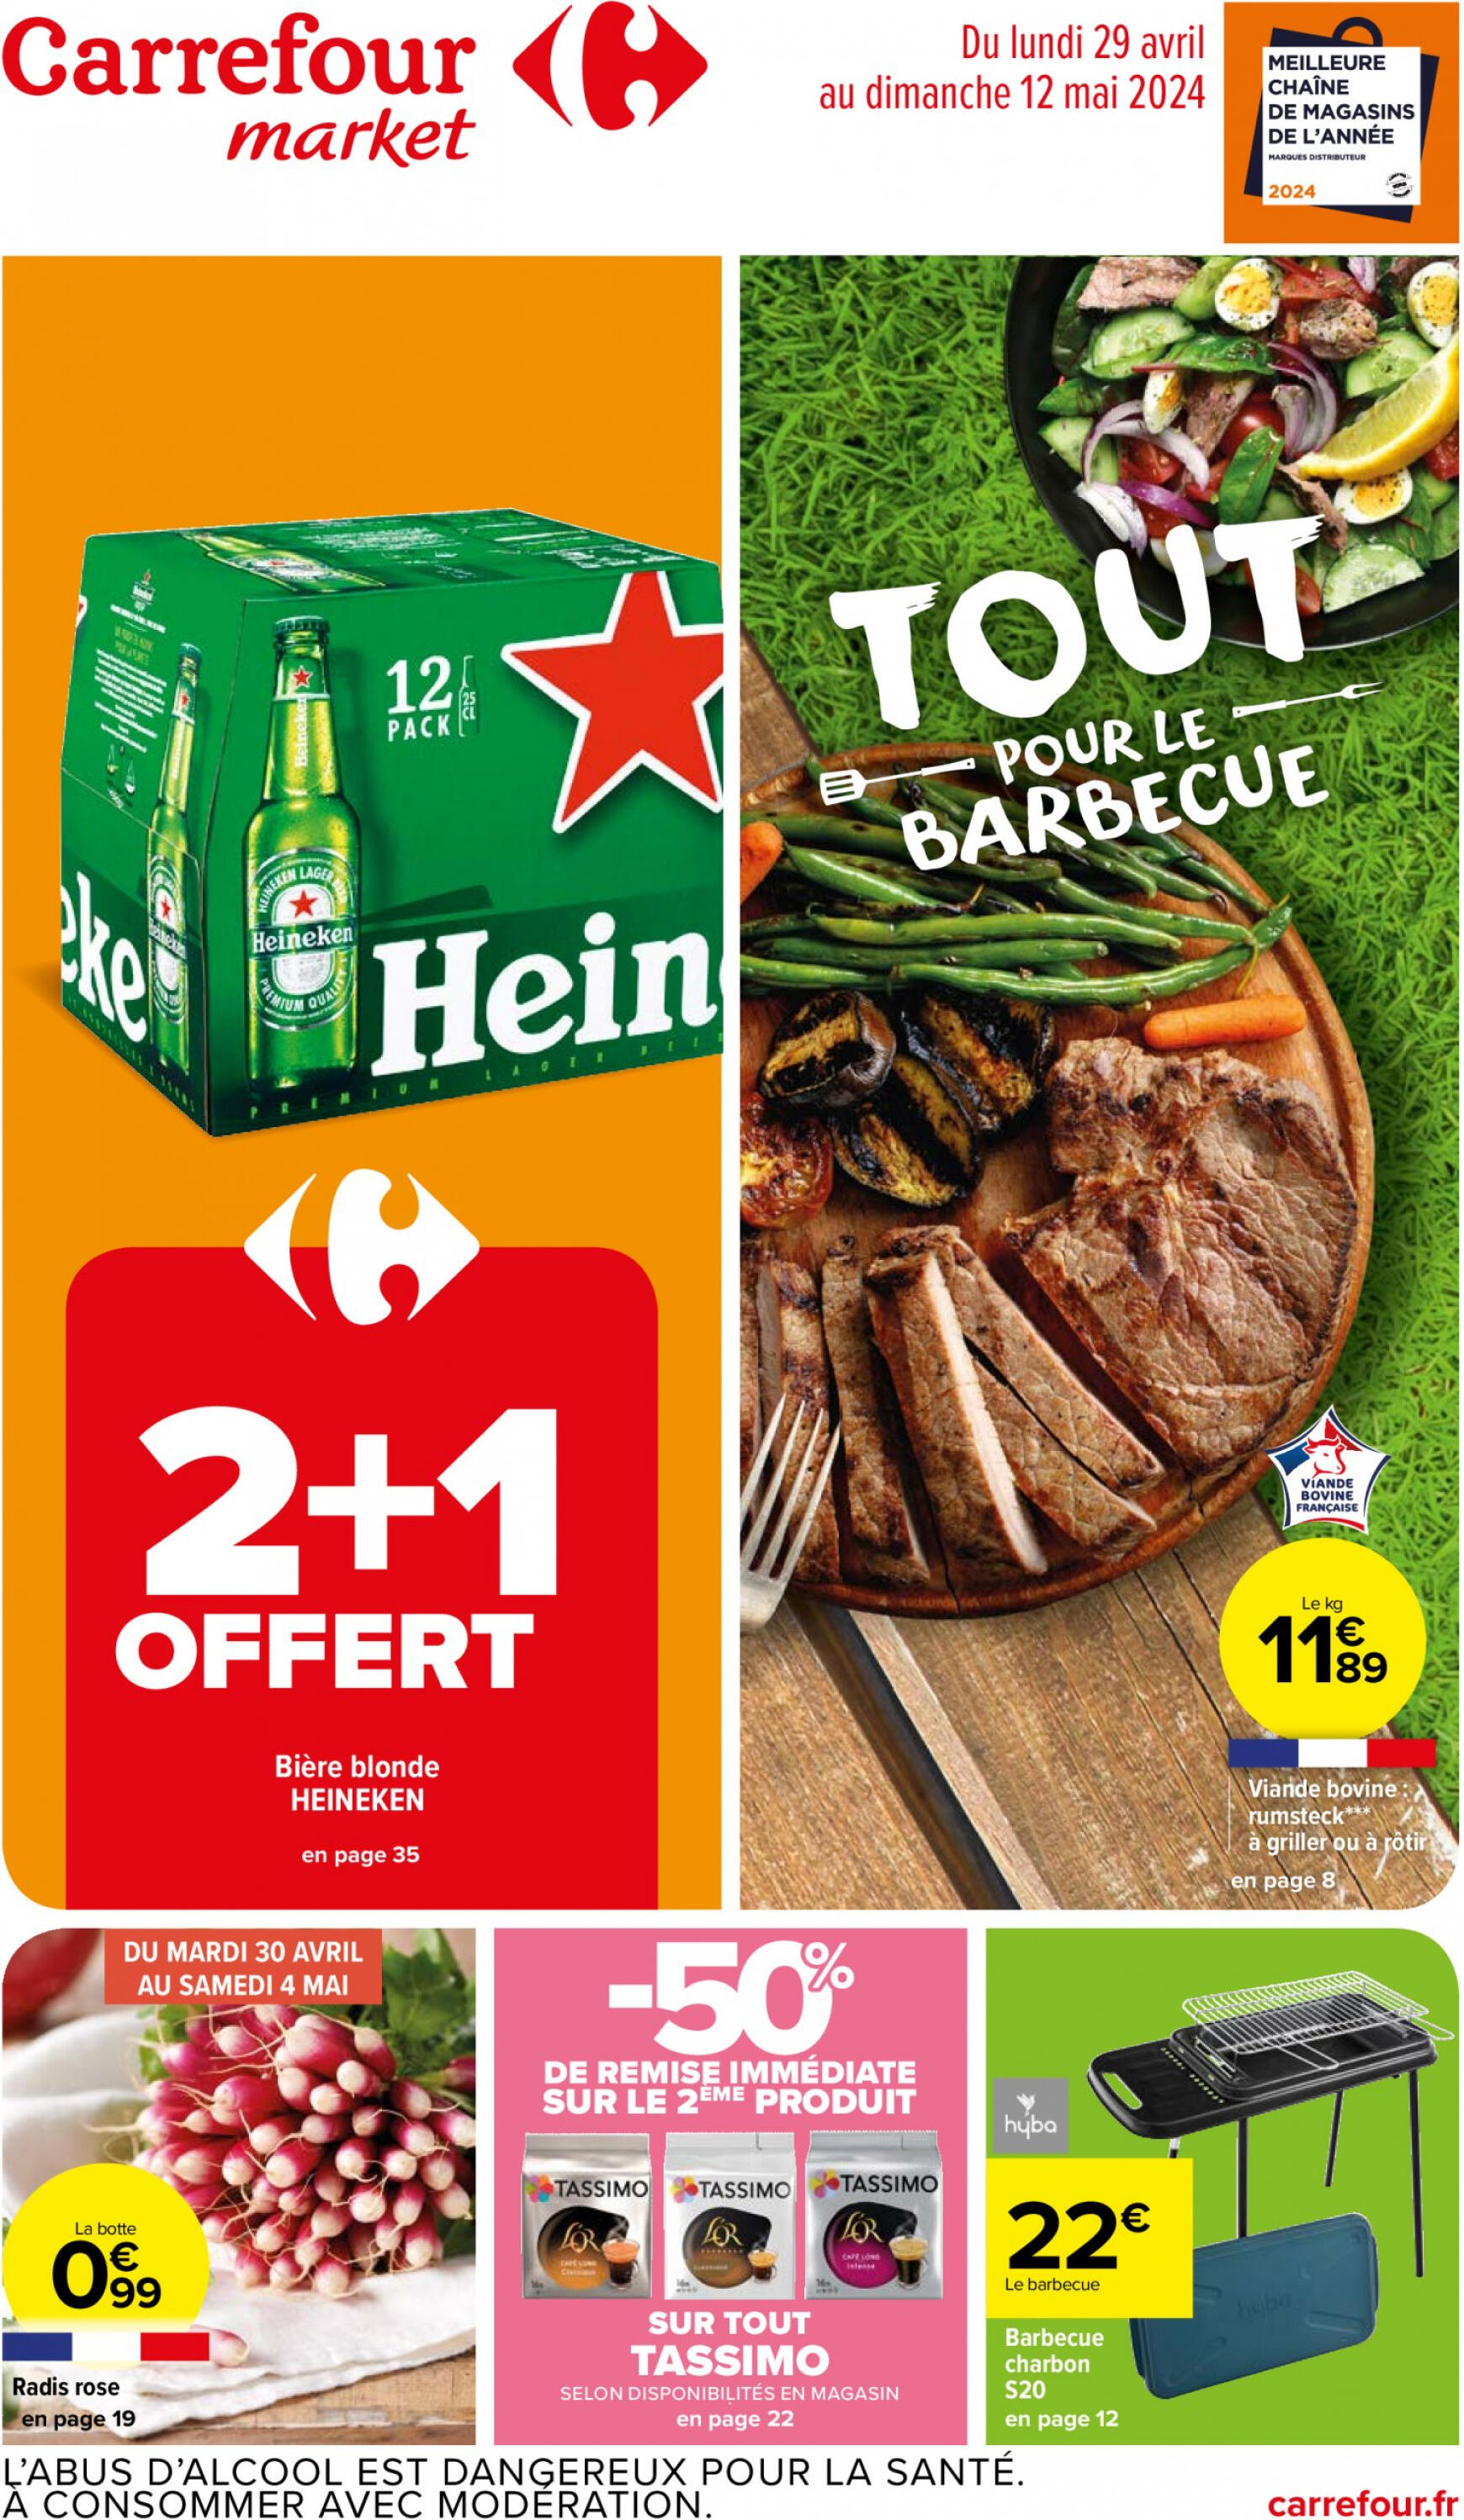 carrefour-market - Prospectus Carrefour Market - Tout pour le Barbecue actuel 29.04. - 12.05.